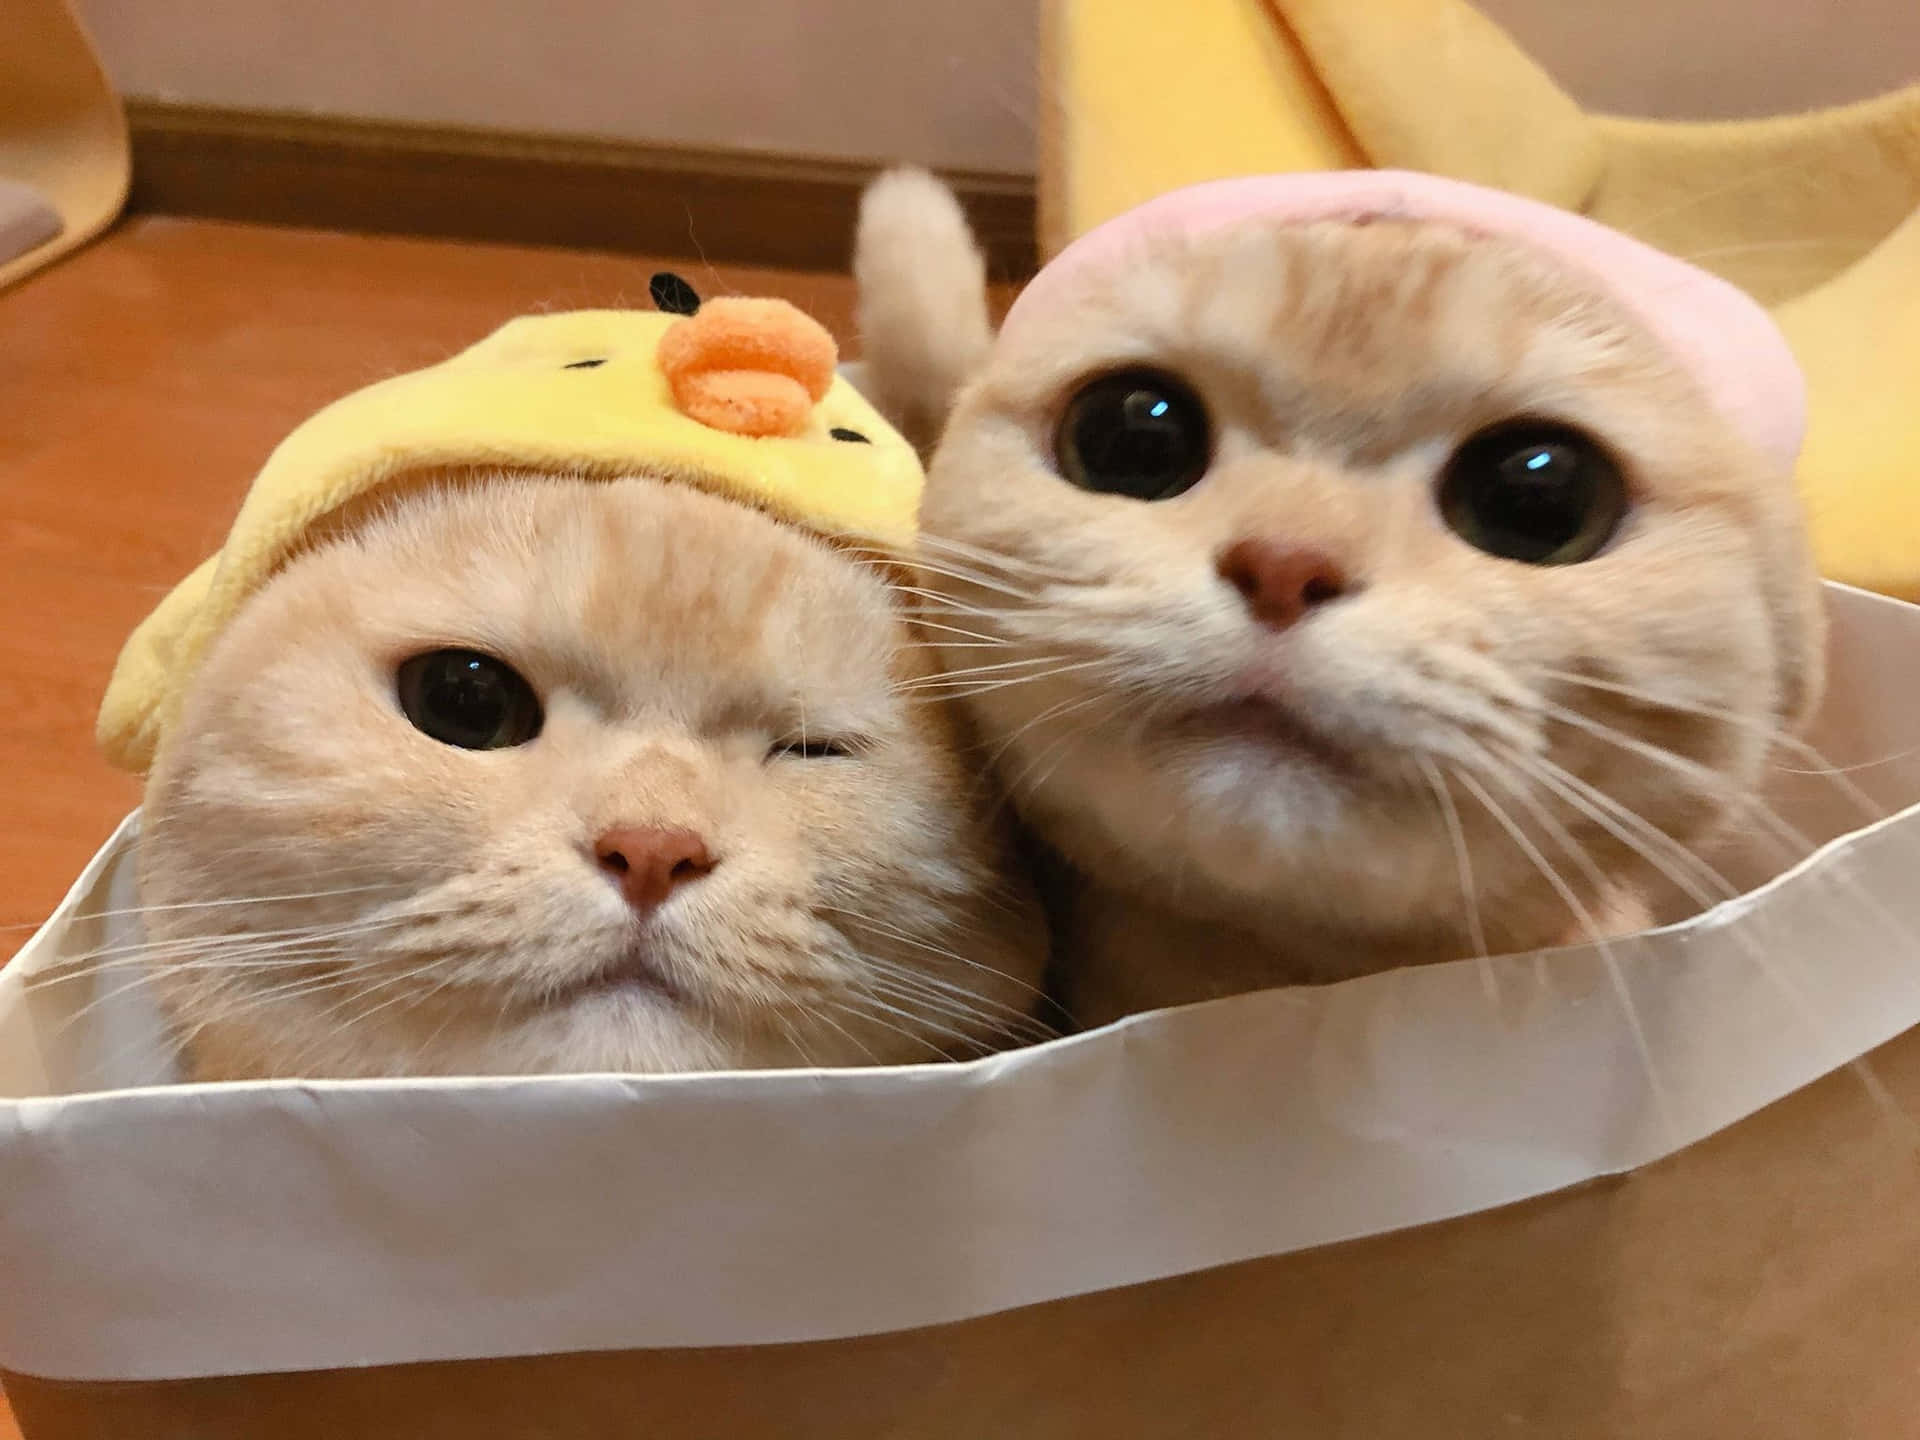 Download Adorable Yellow Fur Cat Pair PFP Wallpaper | Wallpapers.com